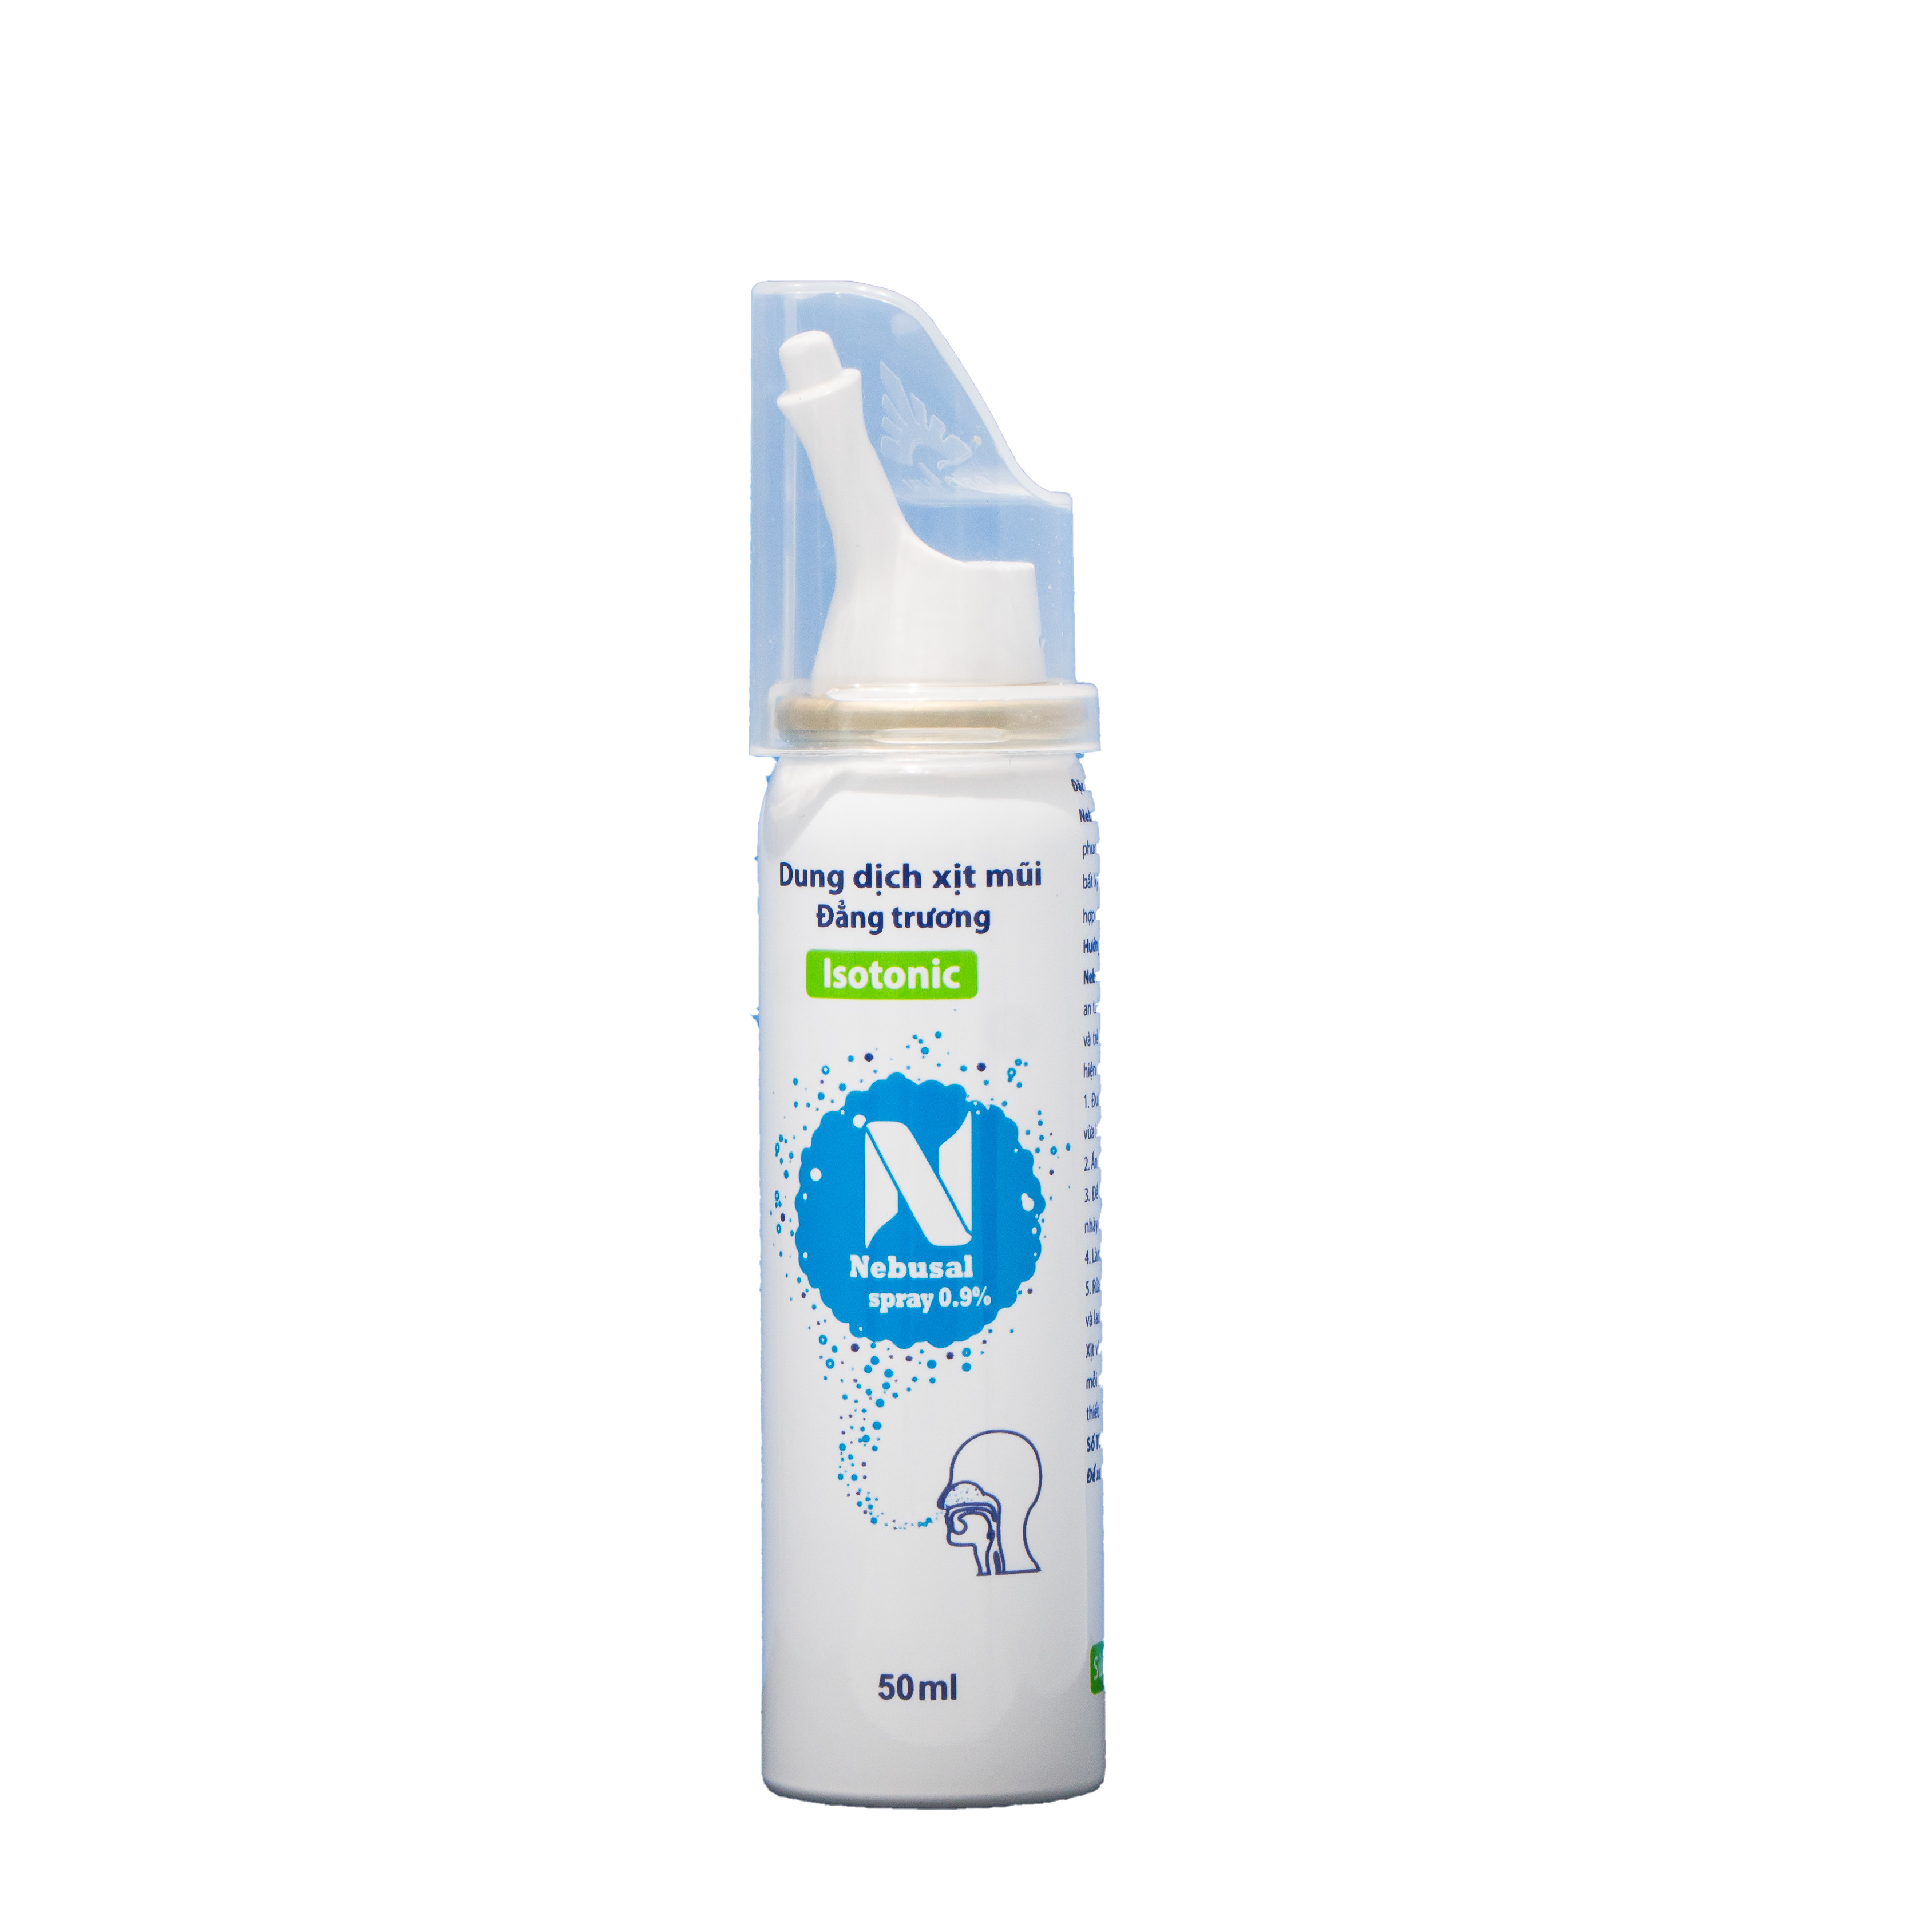 Nước biển xịt mũi Nebusal Spray 0,9%, vệ sinh đường hô hấp, lực xịt dịu nhẹ, phù hợp với trẻ sơ sinh (50ml)